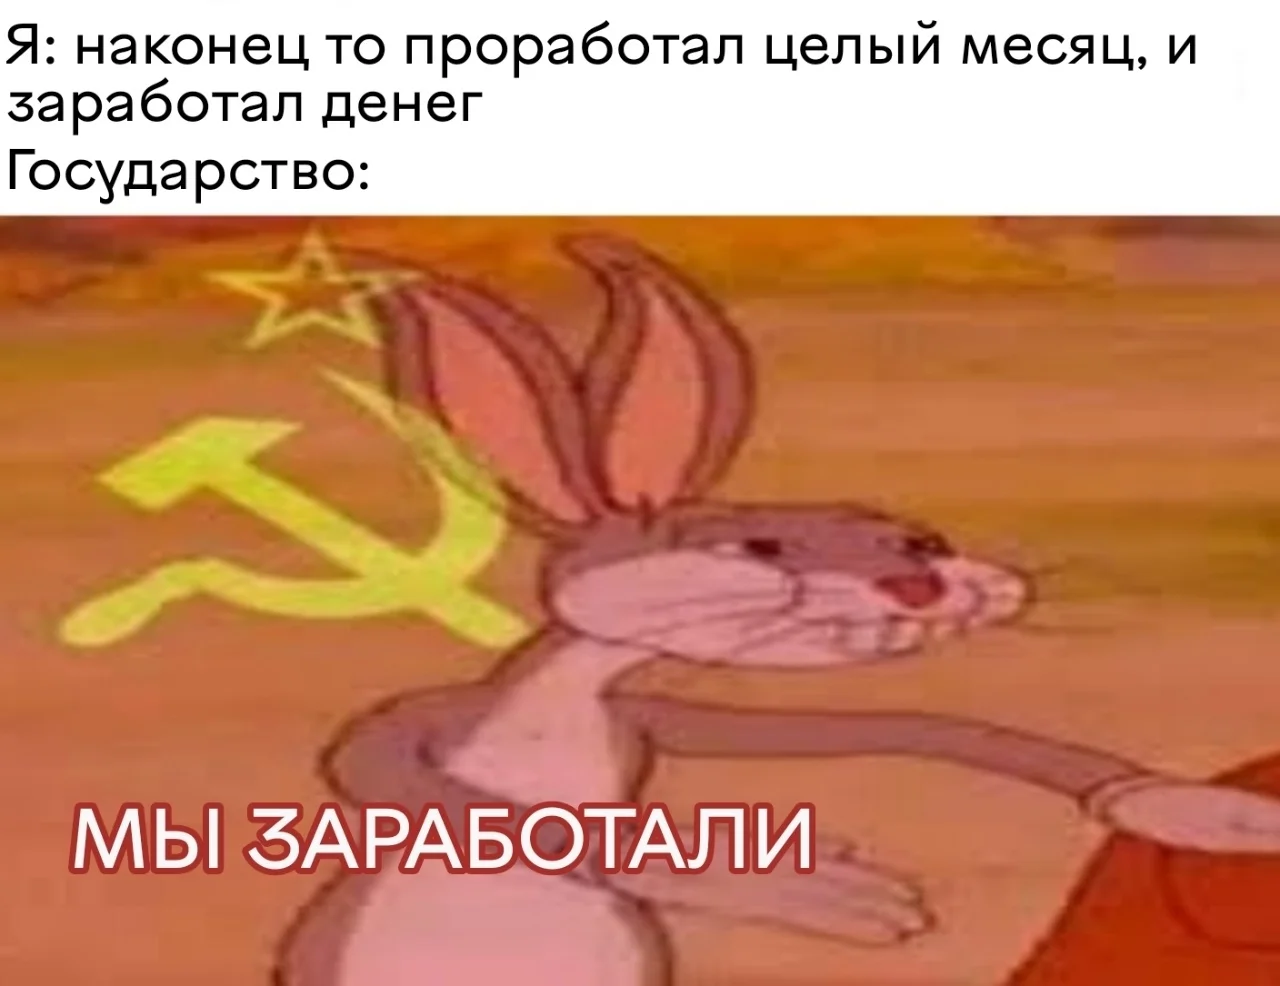 Bugs bunny communist our meme